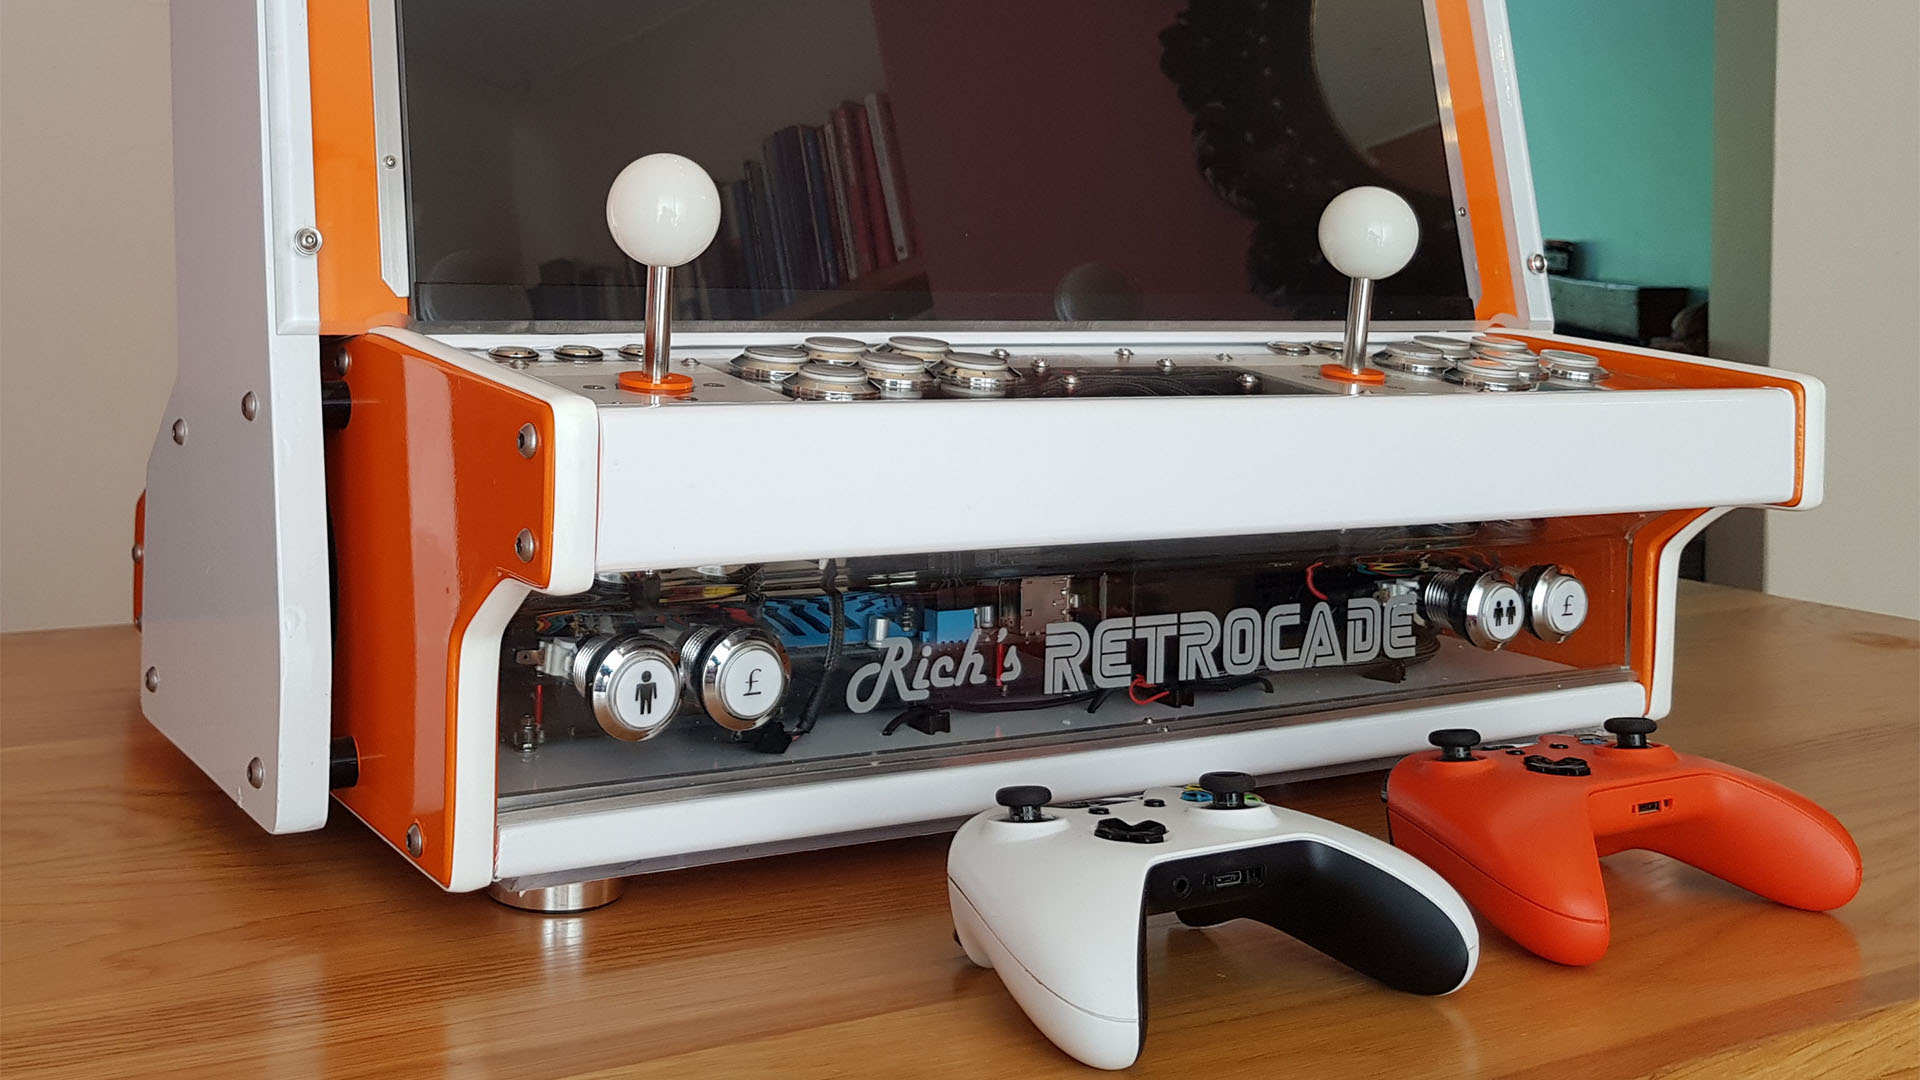 Retro arcade oyun özel PC yapısı: Retrocade düğmeleri ve denetleyicileri